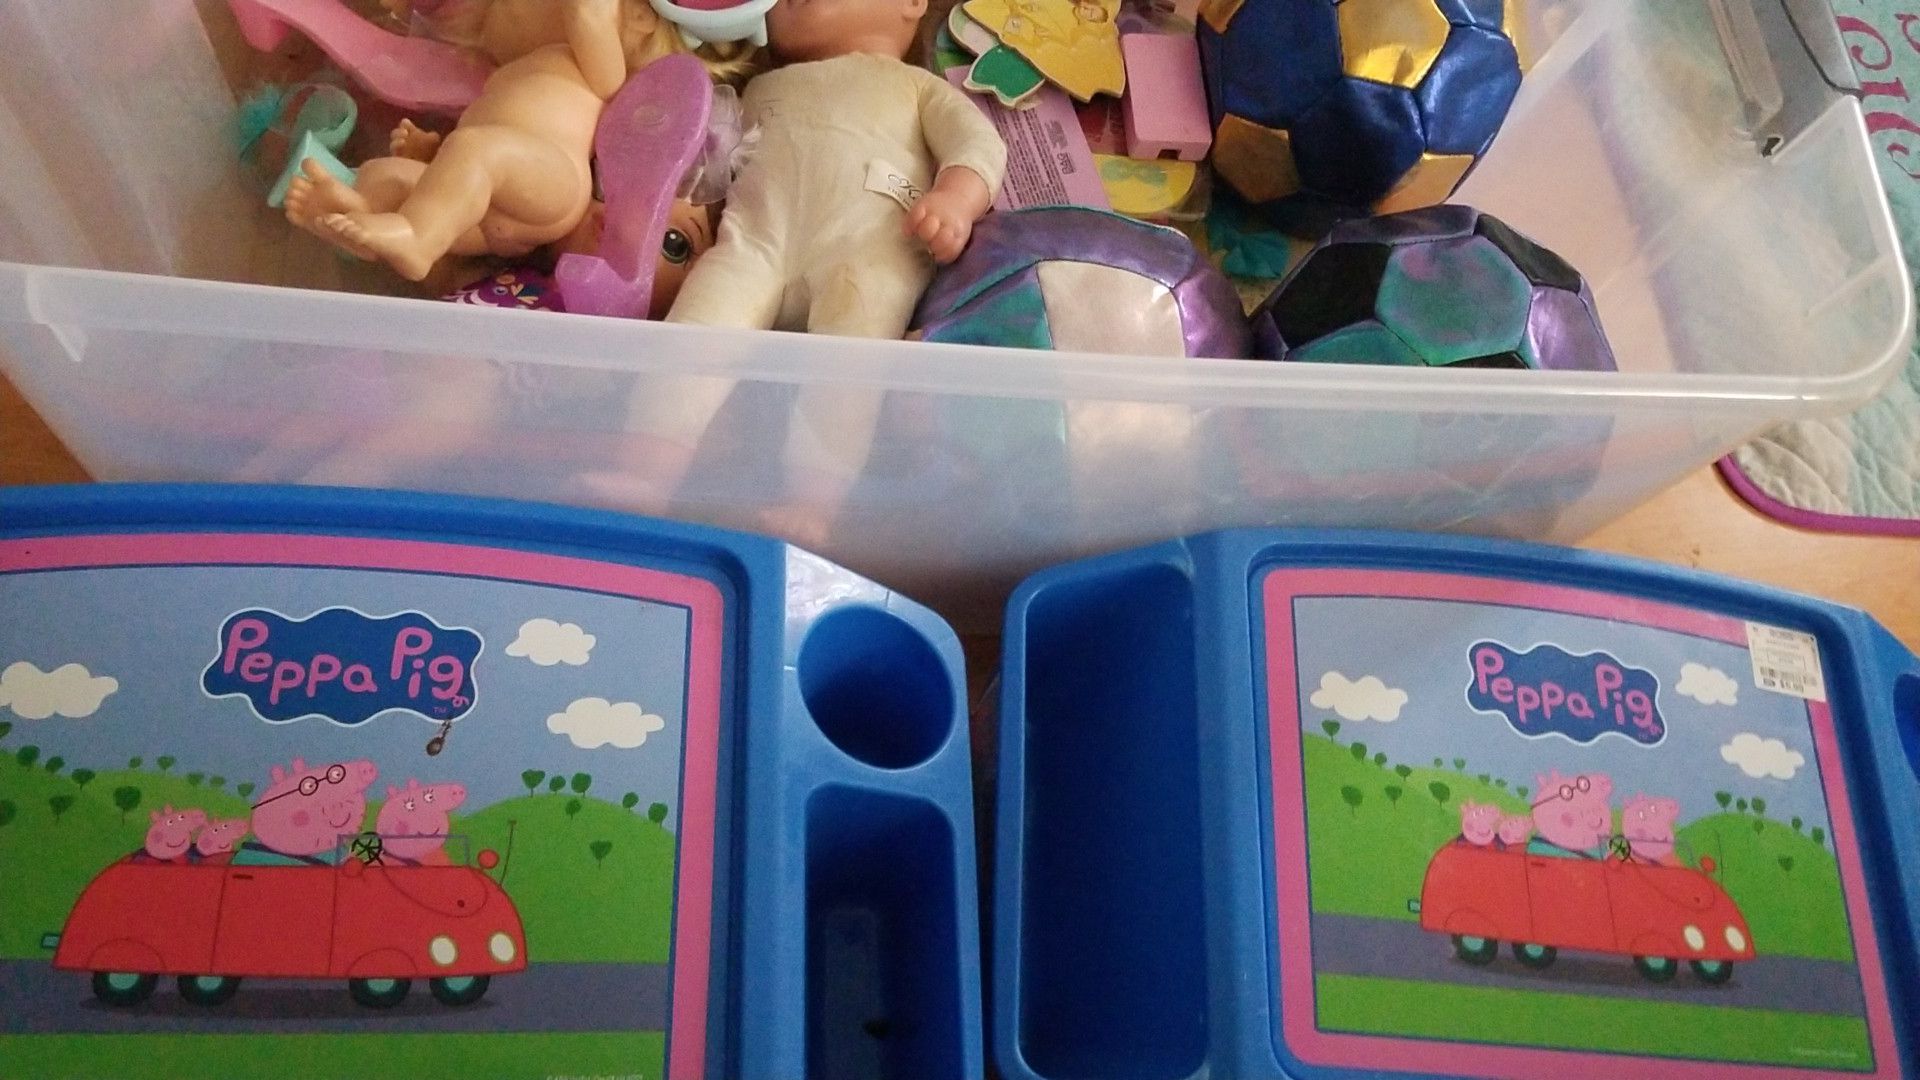 Free kids toys(PENDING PICKUP)